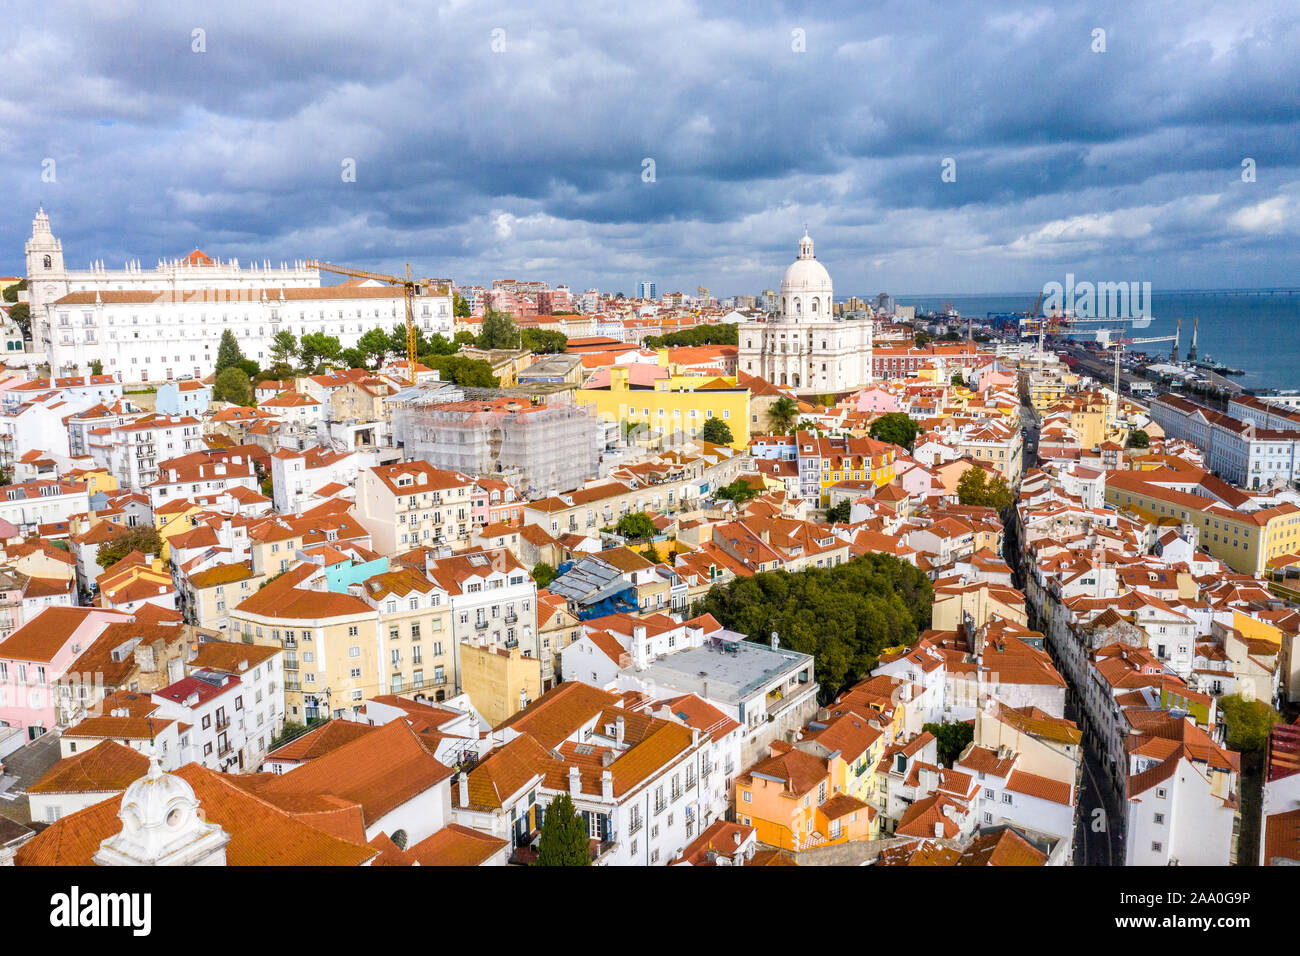 Der Hügel von Alfama von Lissabon - Luftbild vom Handel Platz Praça do Comercio Stockfoto